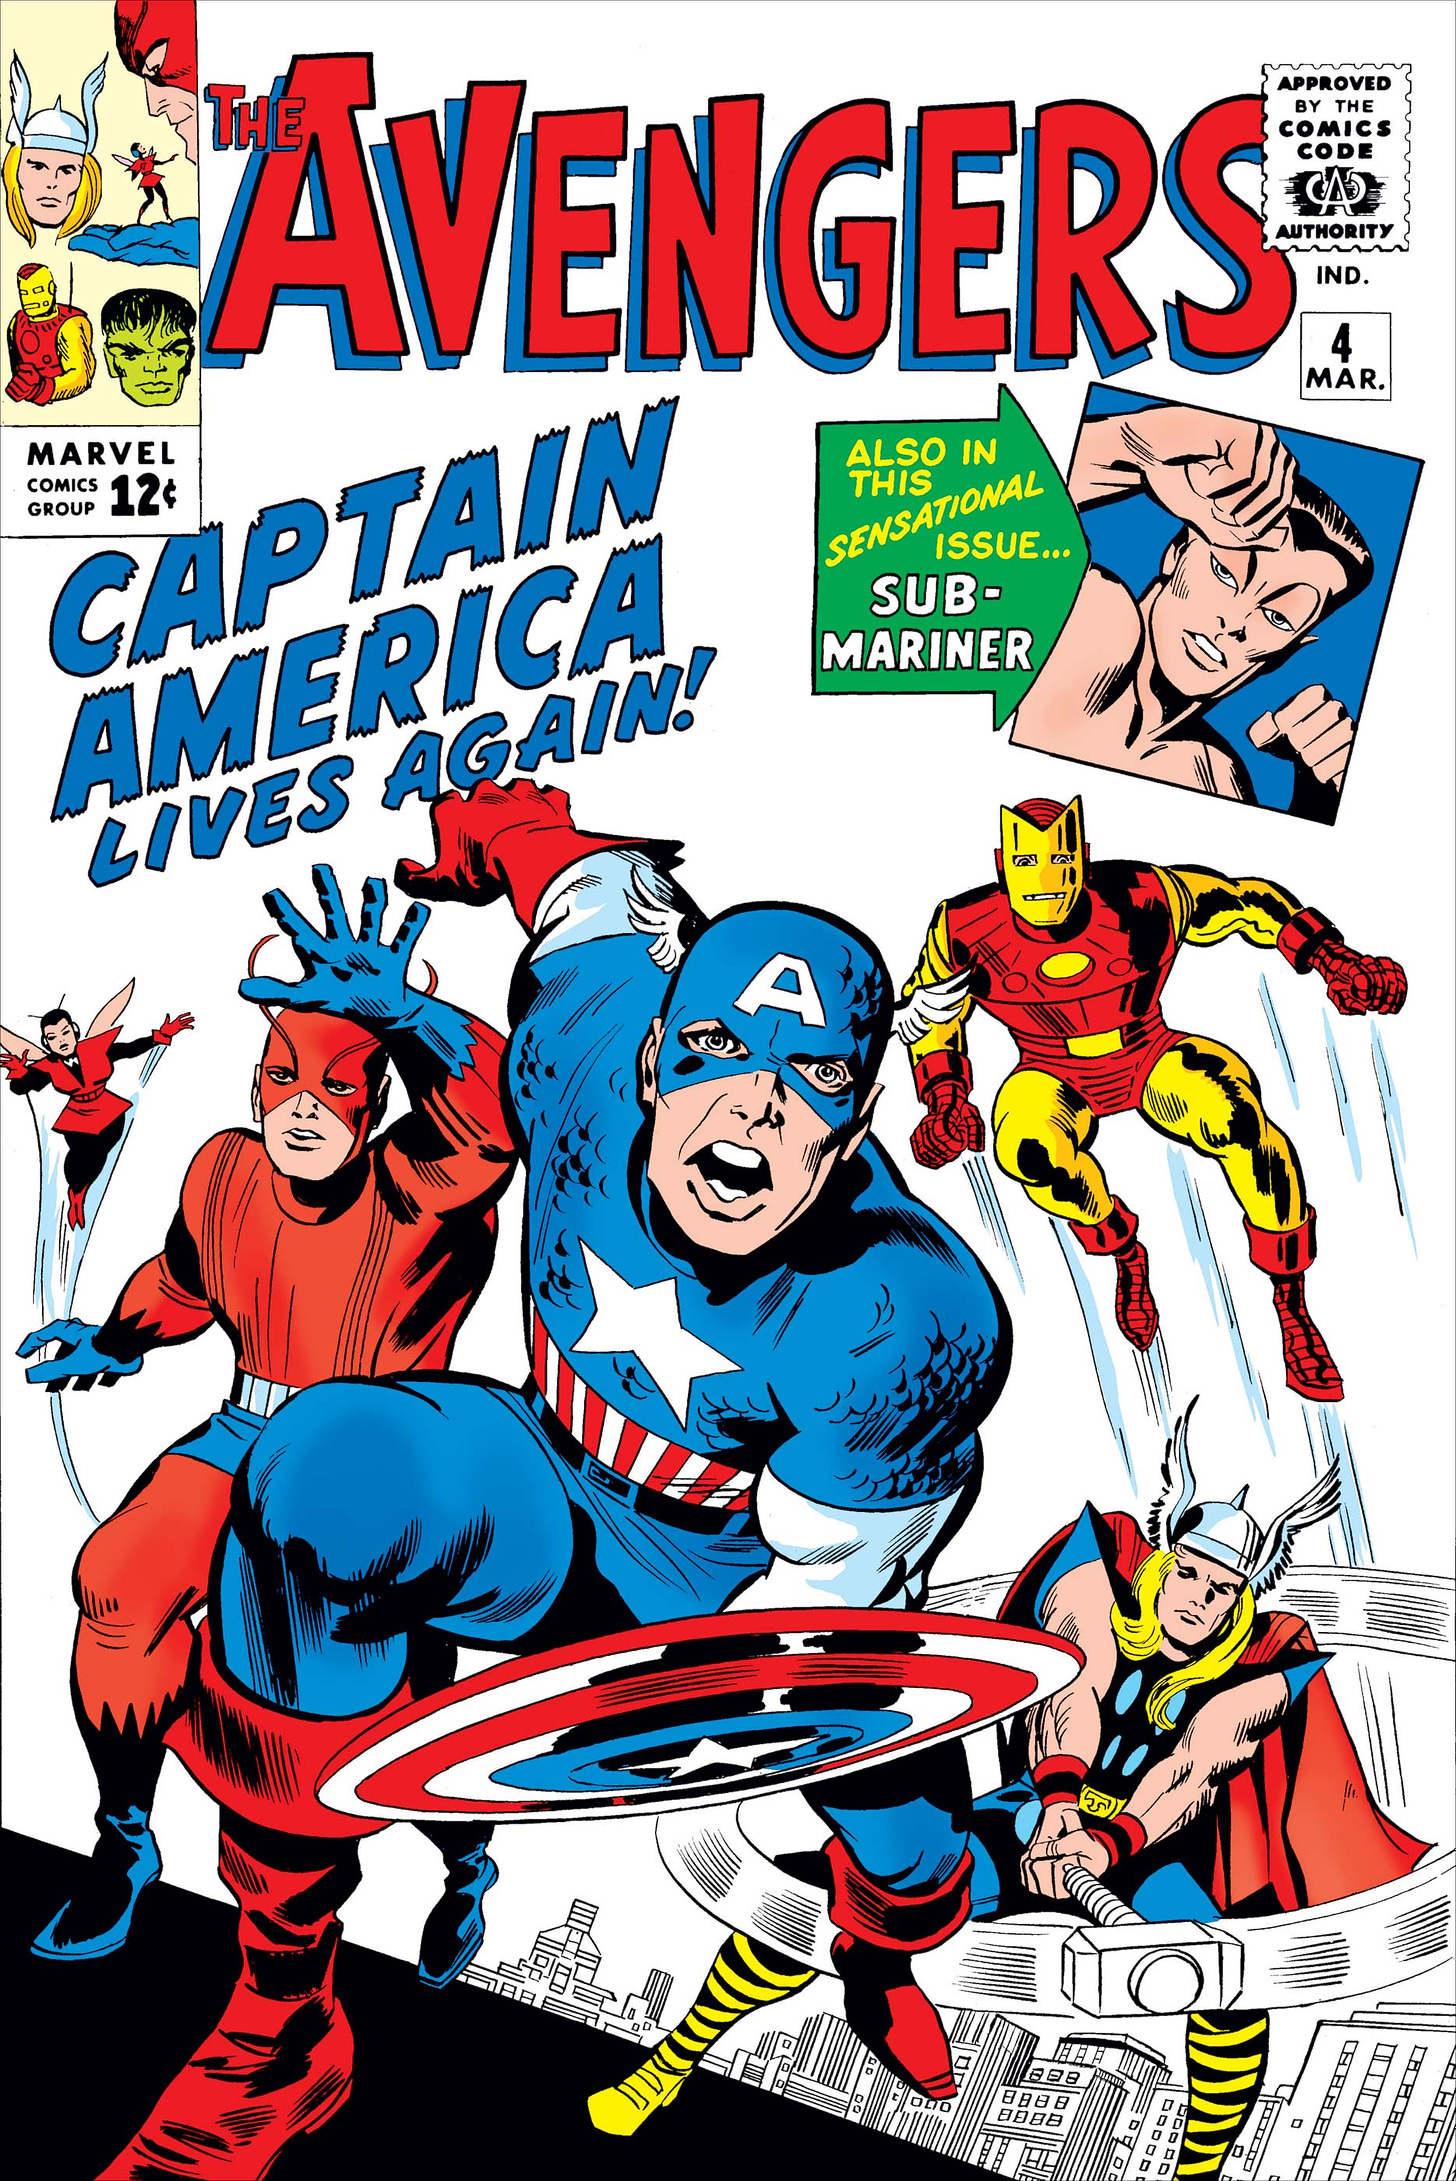 Avengers (1963) #4 | Comic Issues | Marvel